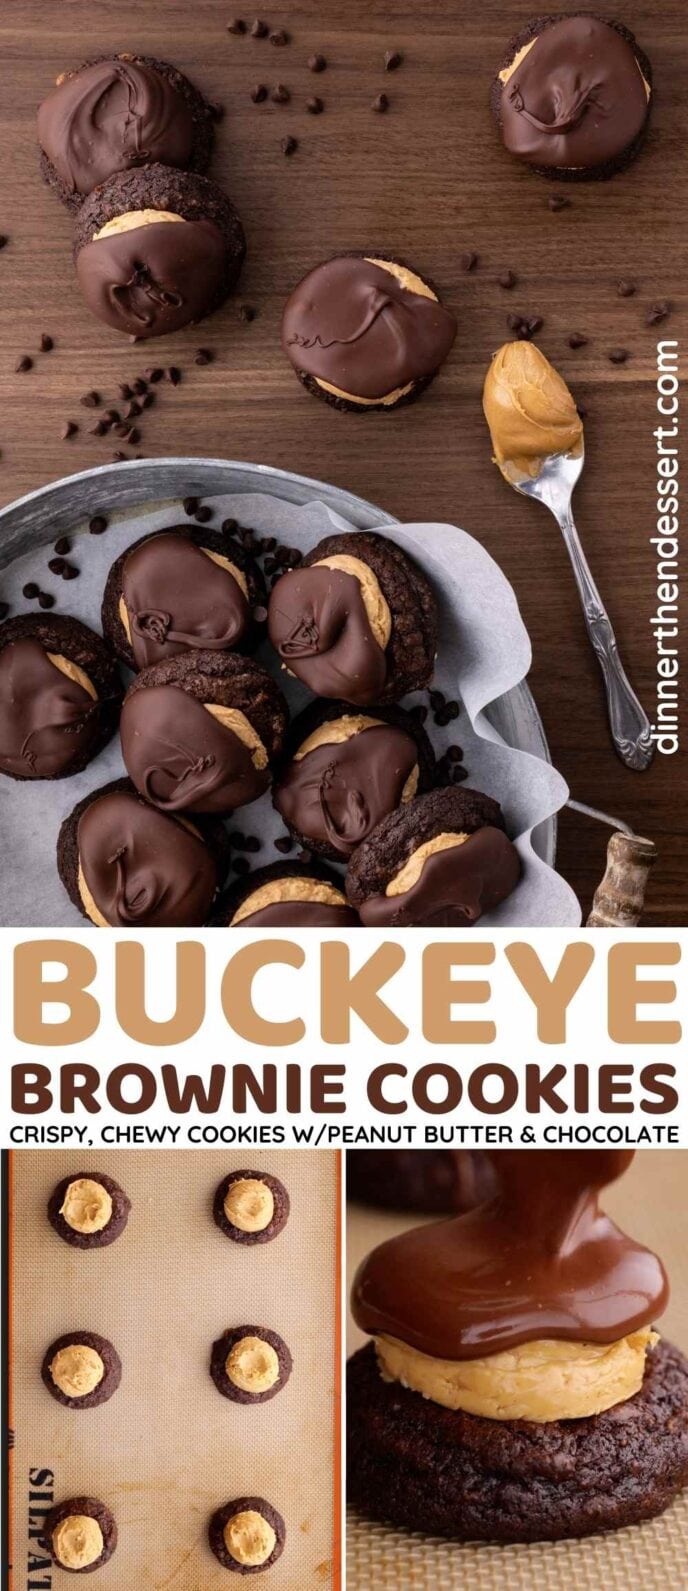 Buckeye Brownie Cookies Collage